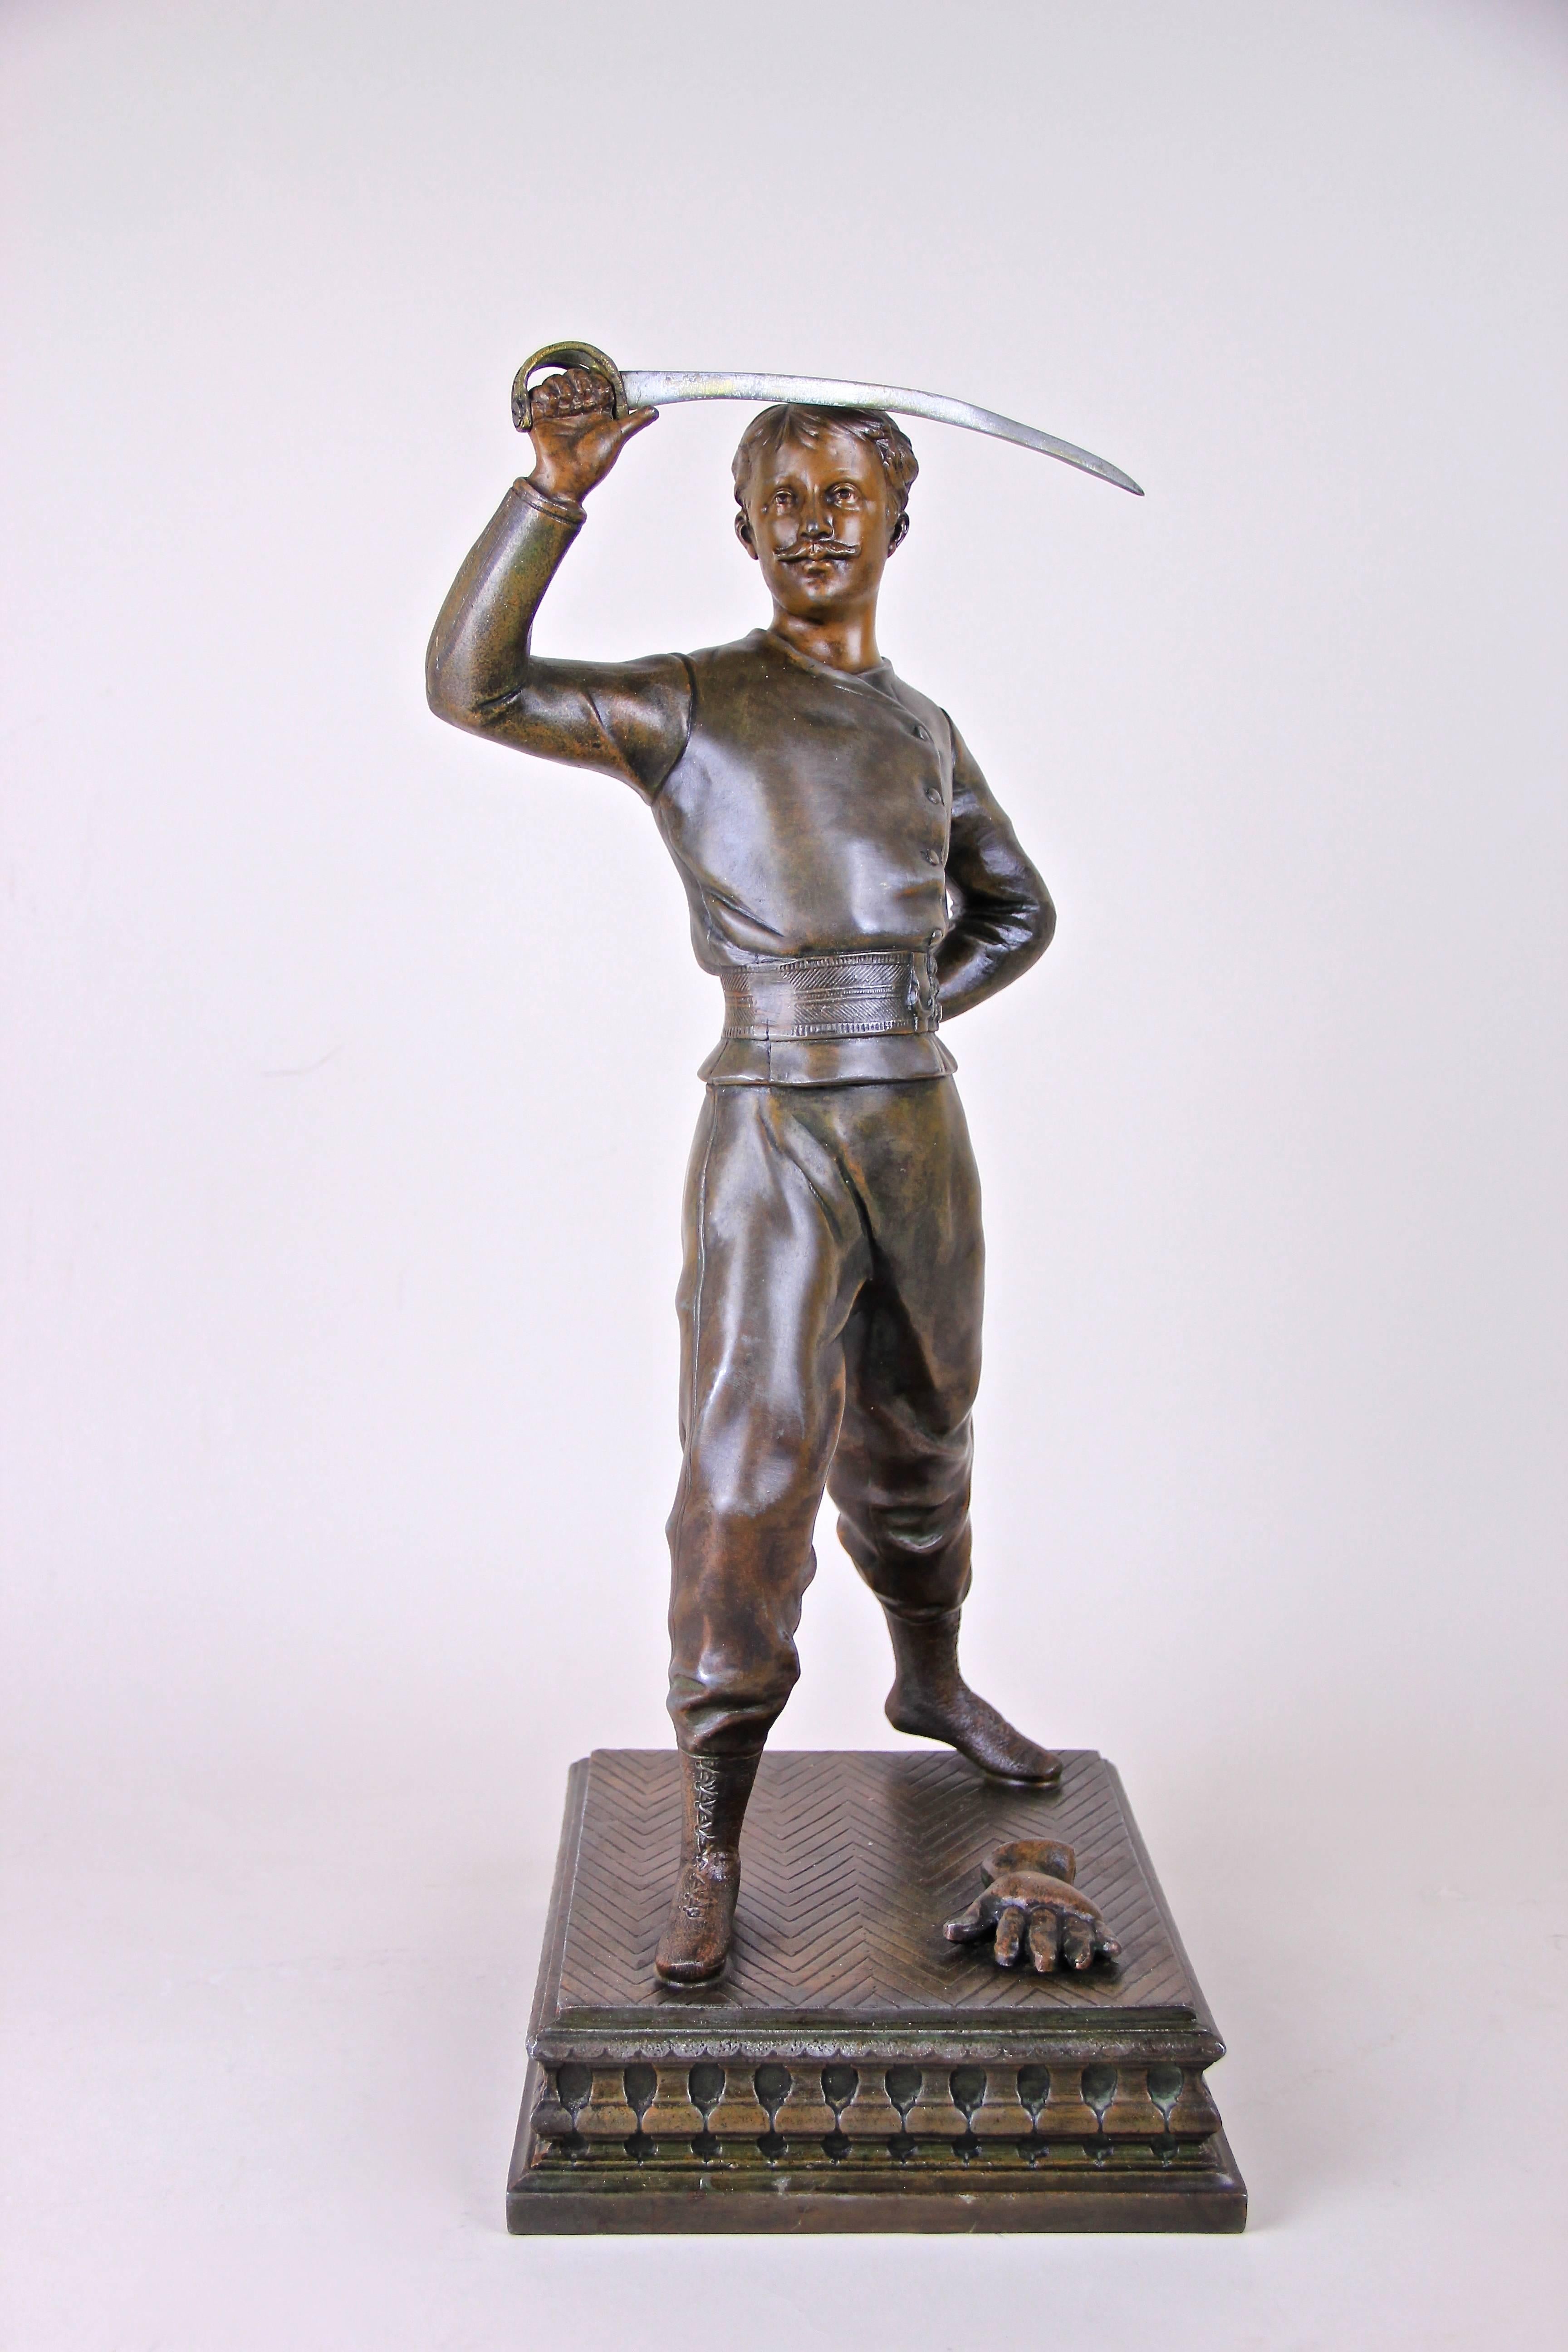 Prächtige Jugendstilskulptur aus Frankreich, um 1900, die einen Schwertkämpfer zeigt, der seinen Säbel hochhält. Diese große Zinnguss-Skulptur ist sehr detailliert gearbeitet und trägt eine unbekannte seitliche Signatur auf dem Sockel. Eine sehr